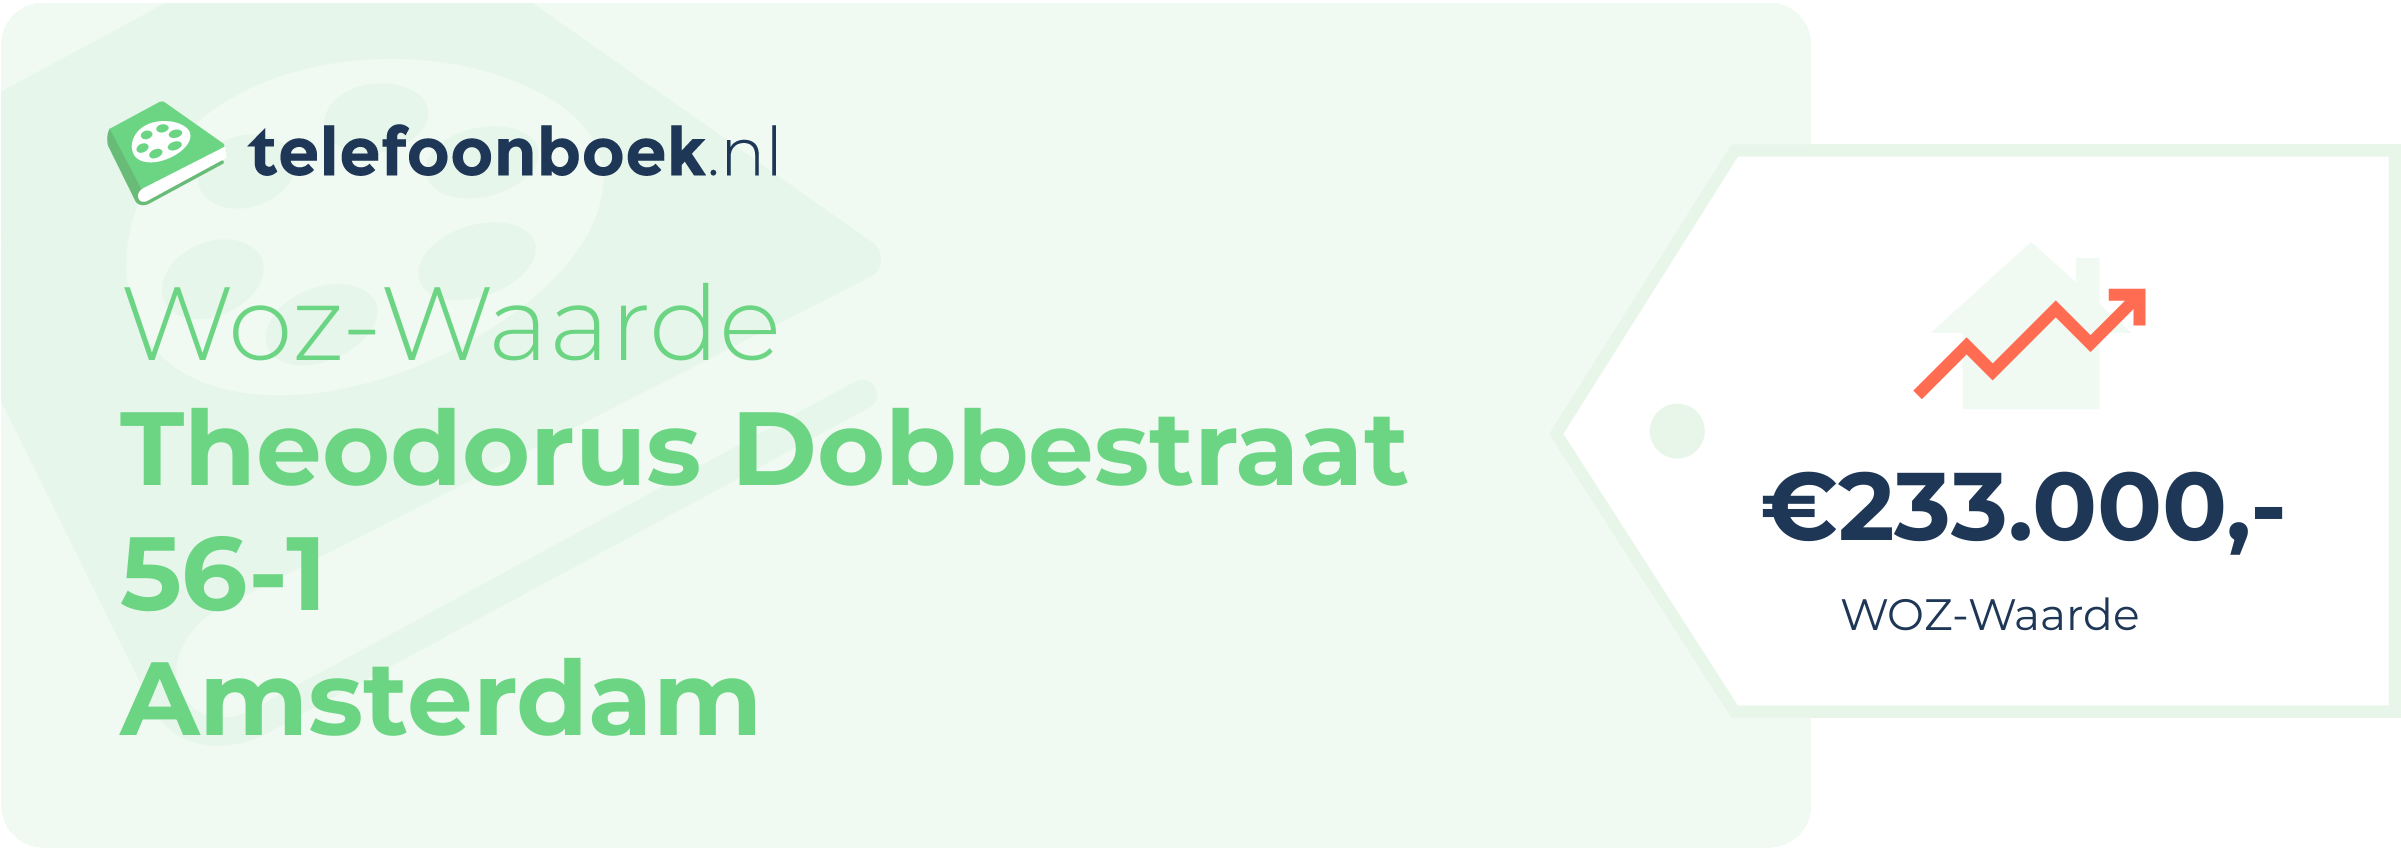 WOZ-waarde Theodorus Dobbestraat 56-1 Amsterdam